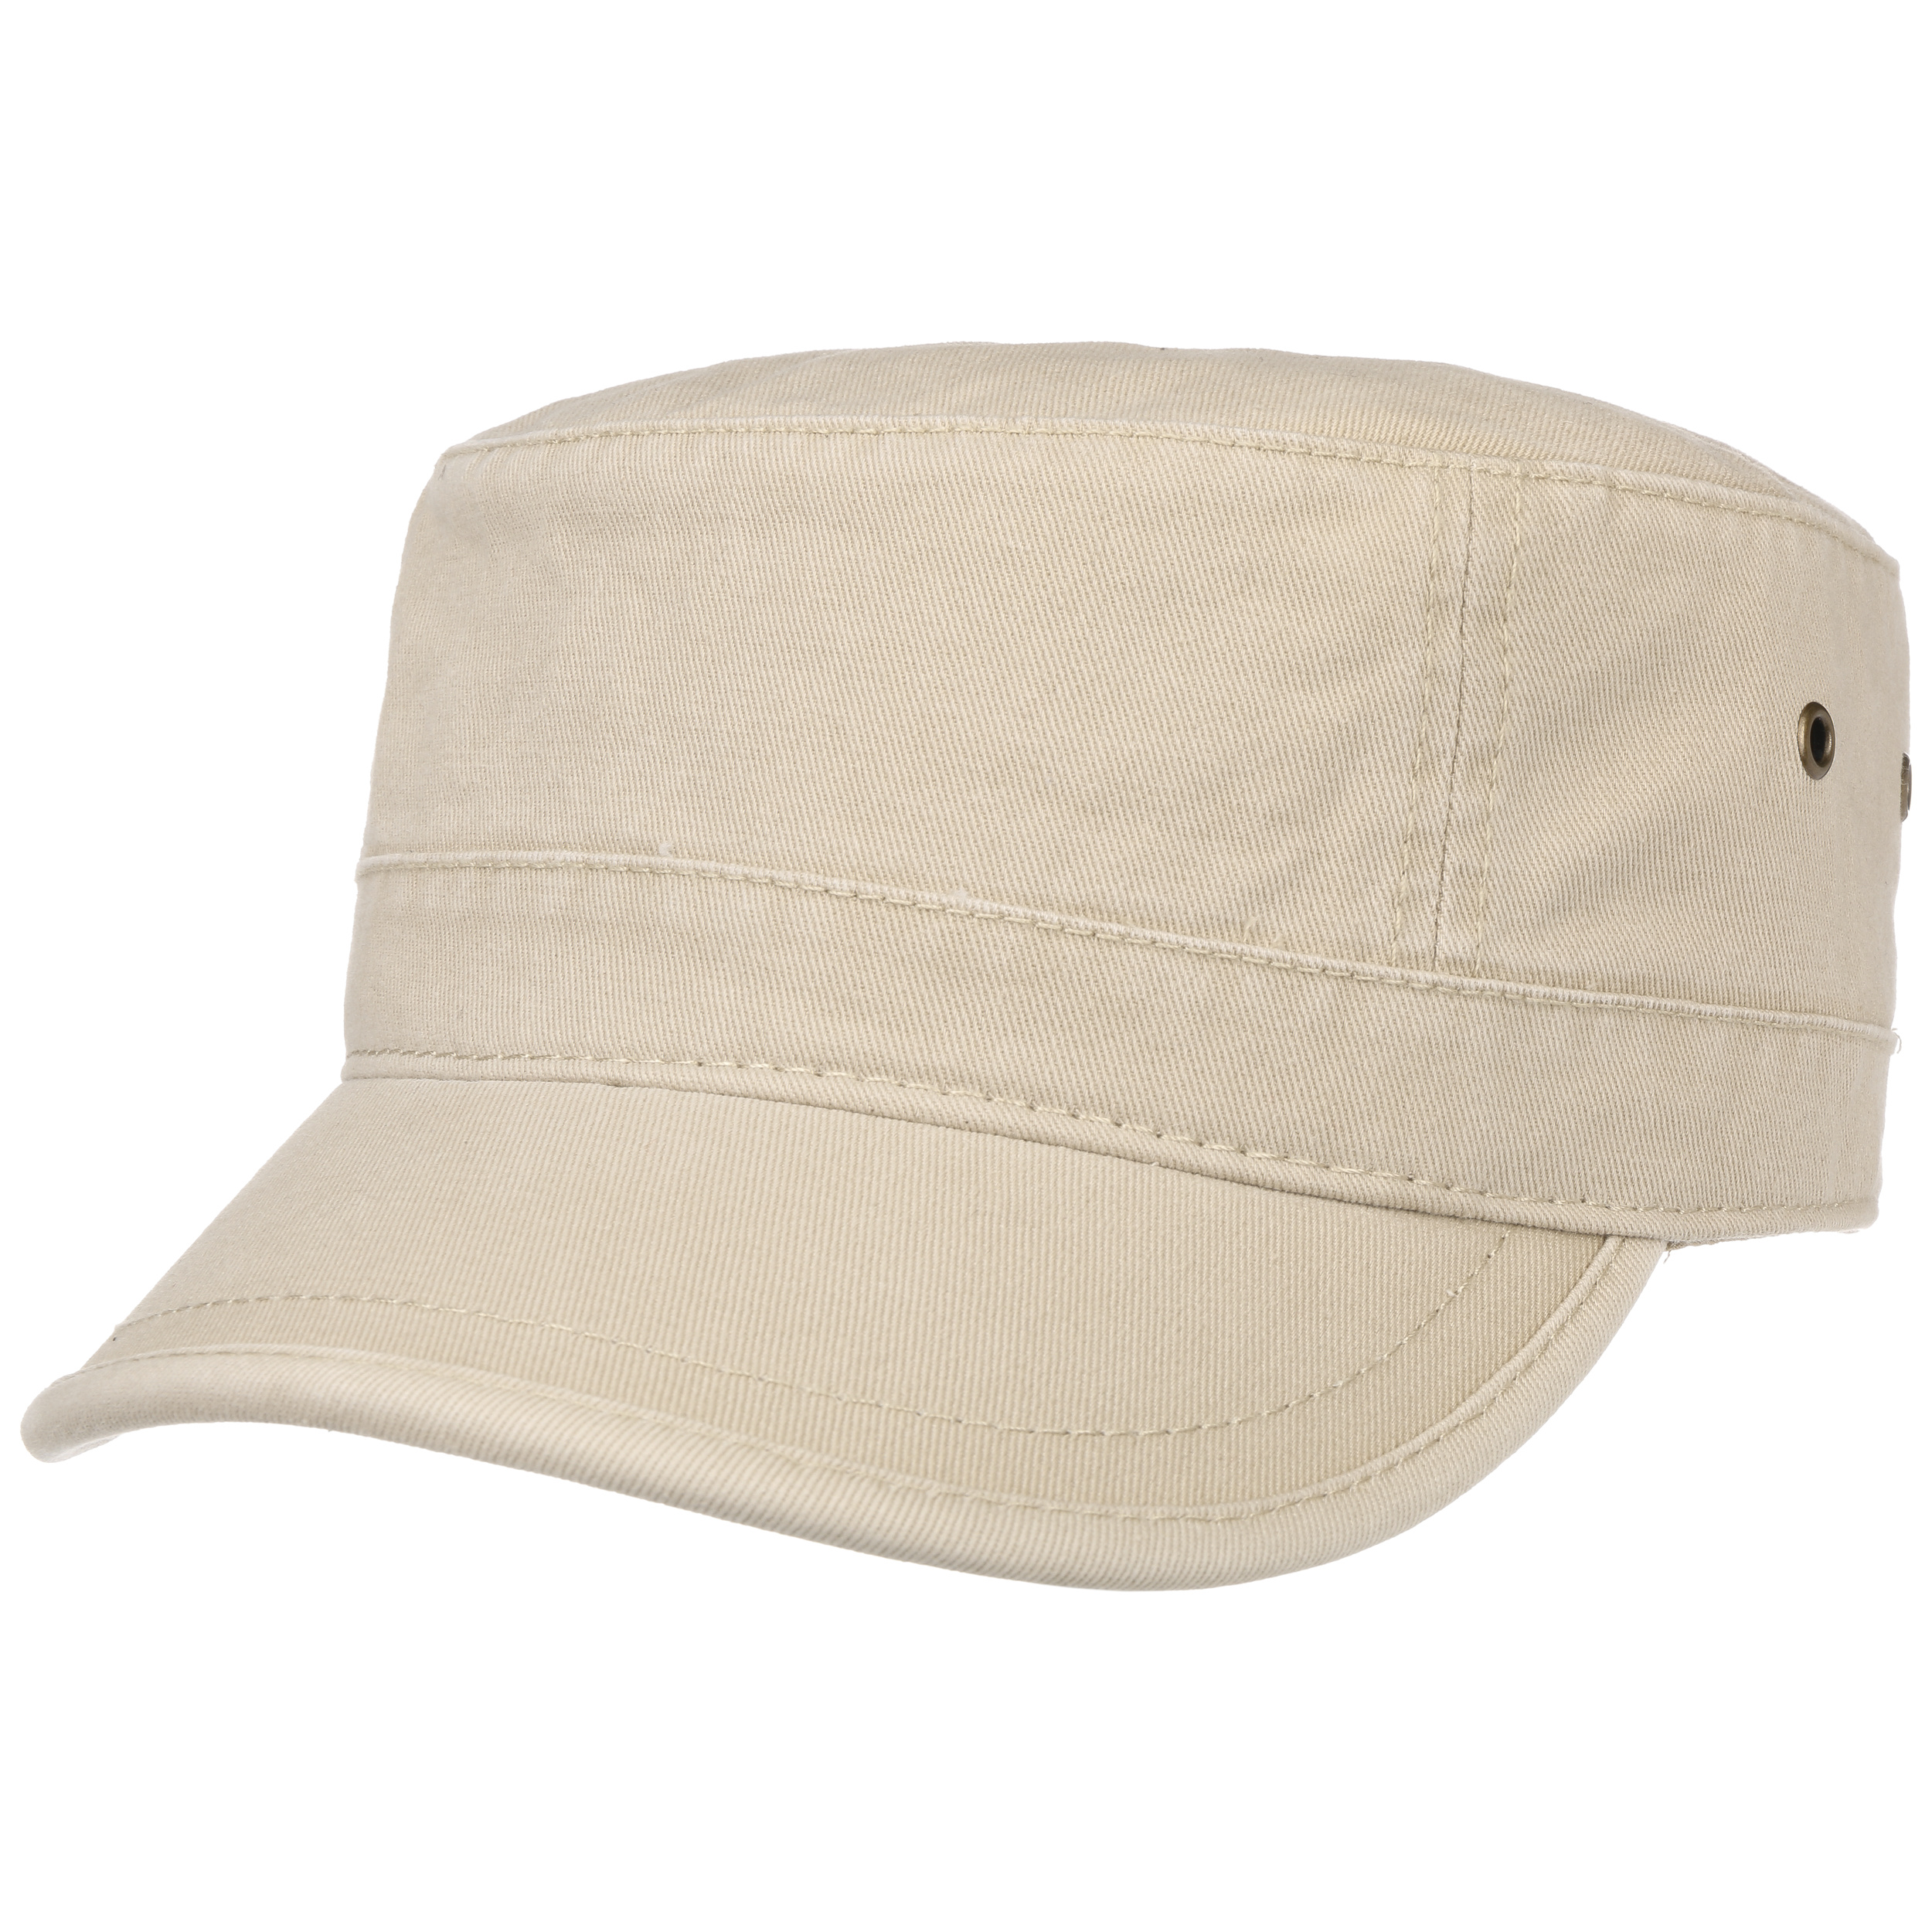 moda unisex tetto piano cappello militare cadetto Patrol Bush cappello baseball campo tappo Winkey 2018 nuovi Fasion tetto piano cappello 